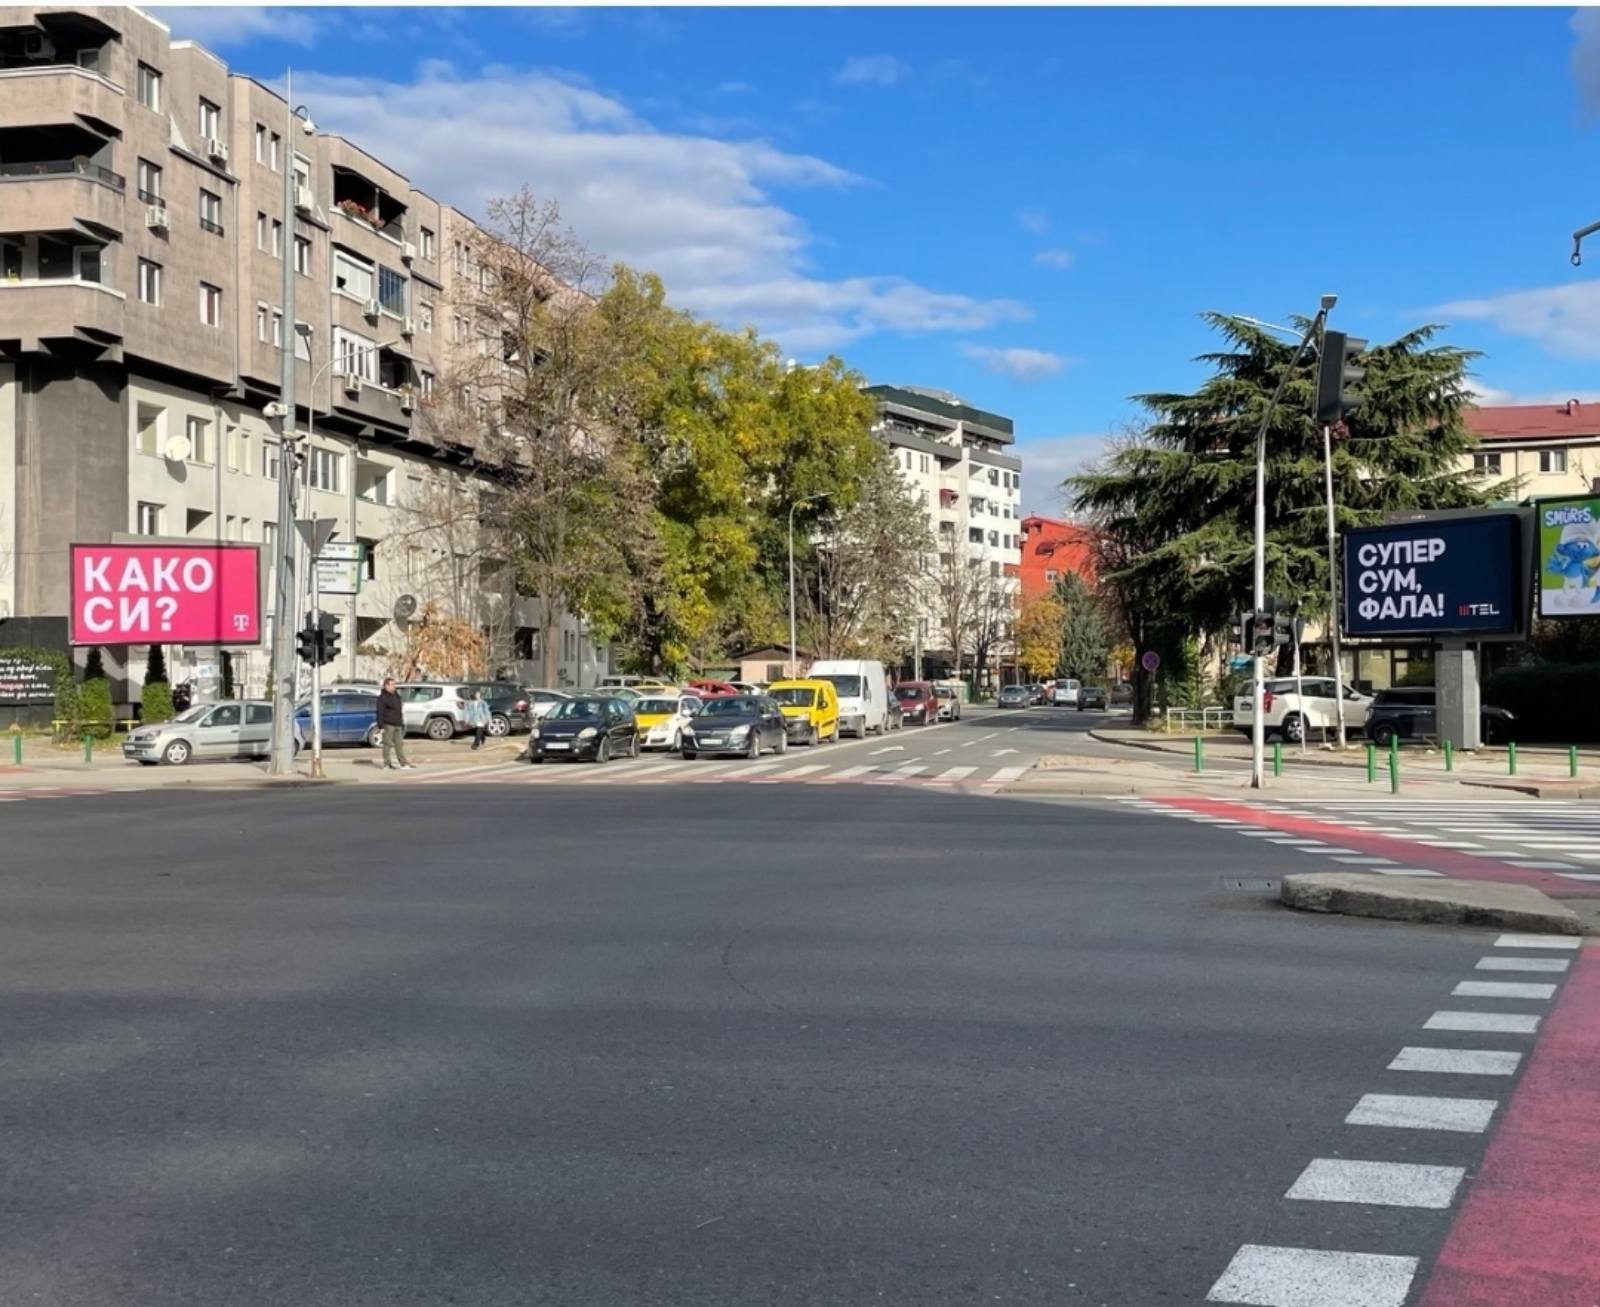 Досетлив чет преку билборди на македонските телекомуникациски оператори: Телеком прашува “Како си?” – Мтел одговара Супер сум. Фала!